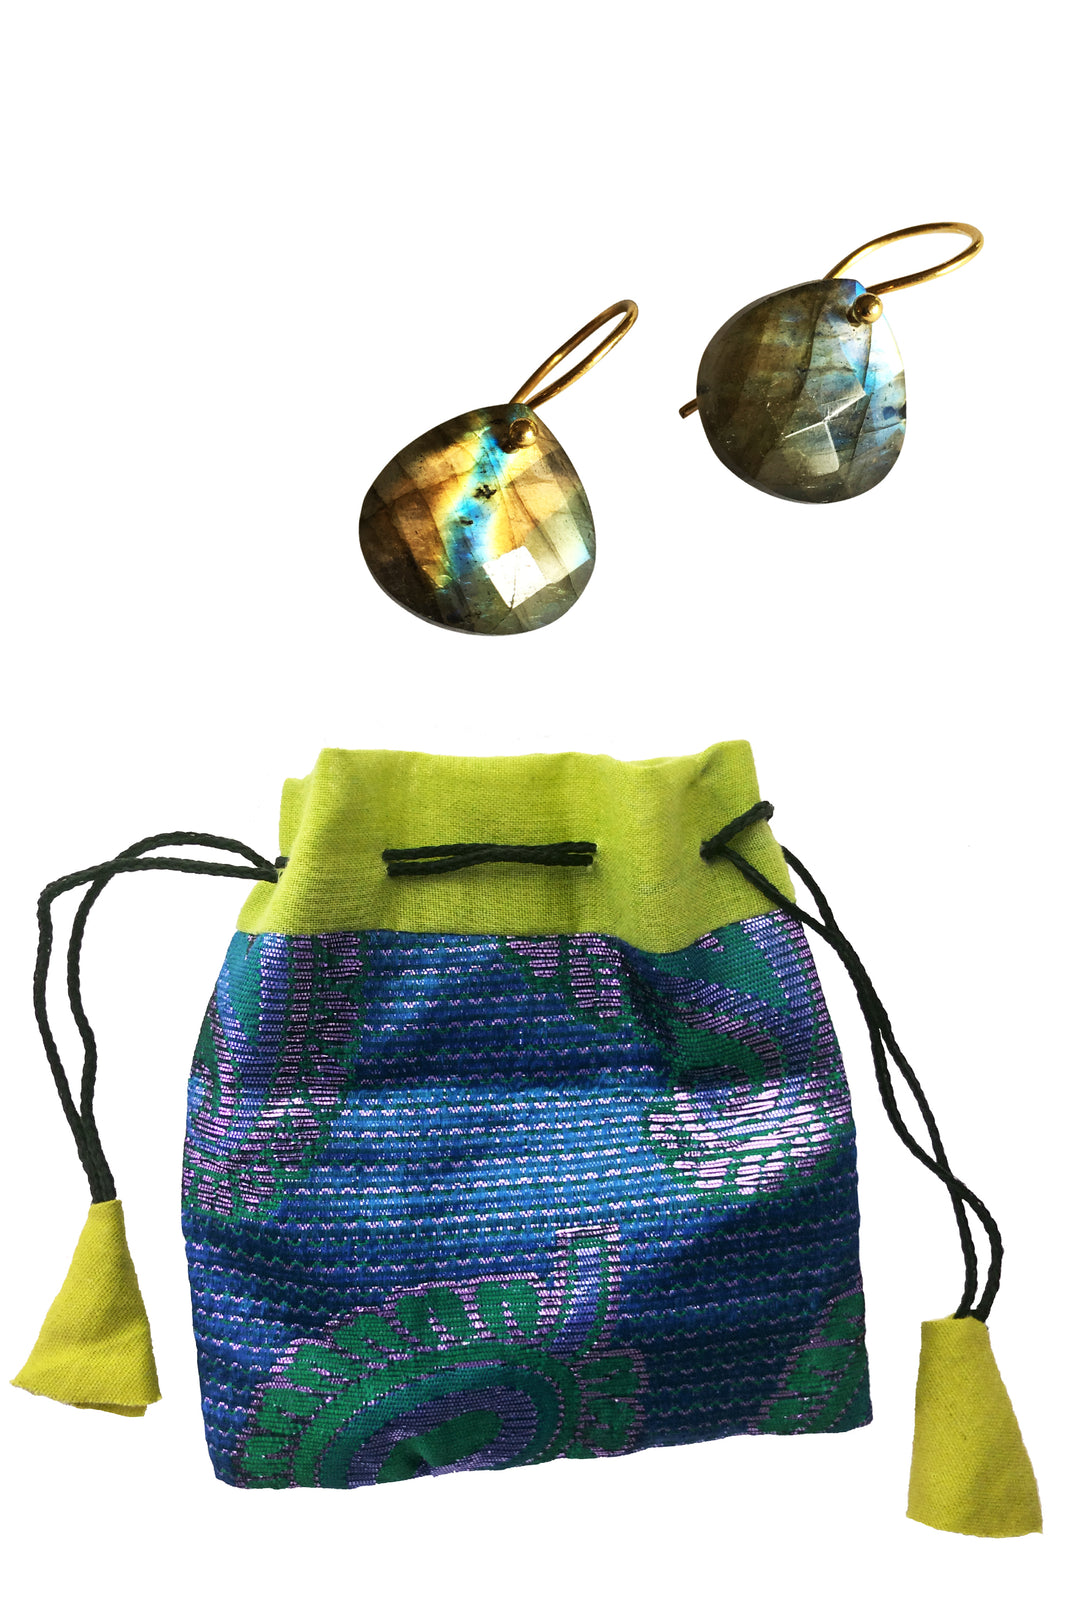 labradorite teardrop earrings gold hook in sari bag